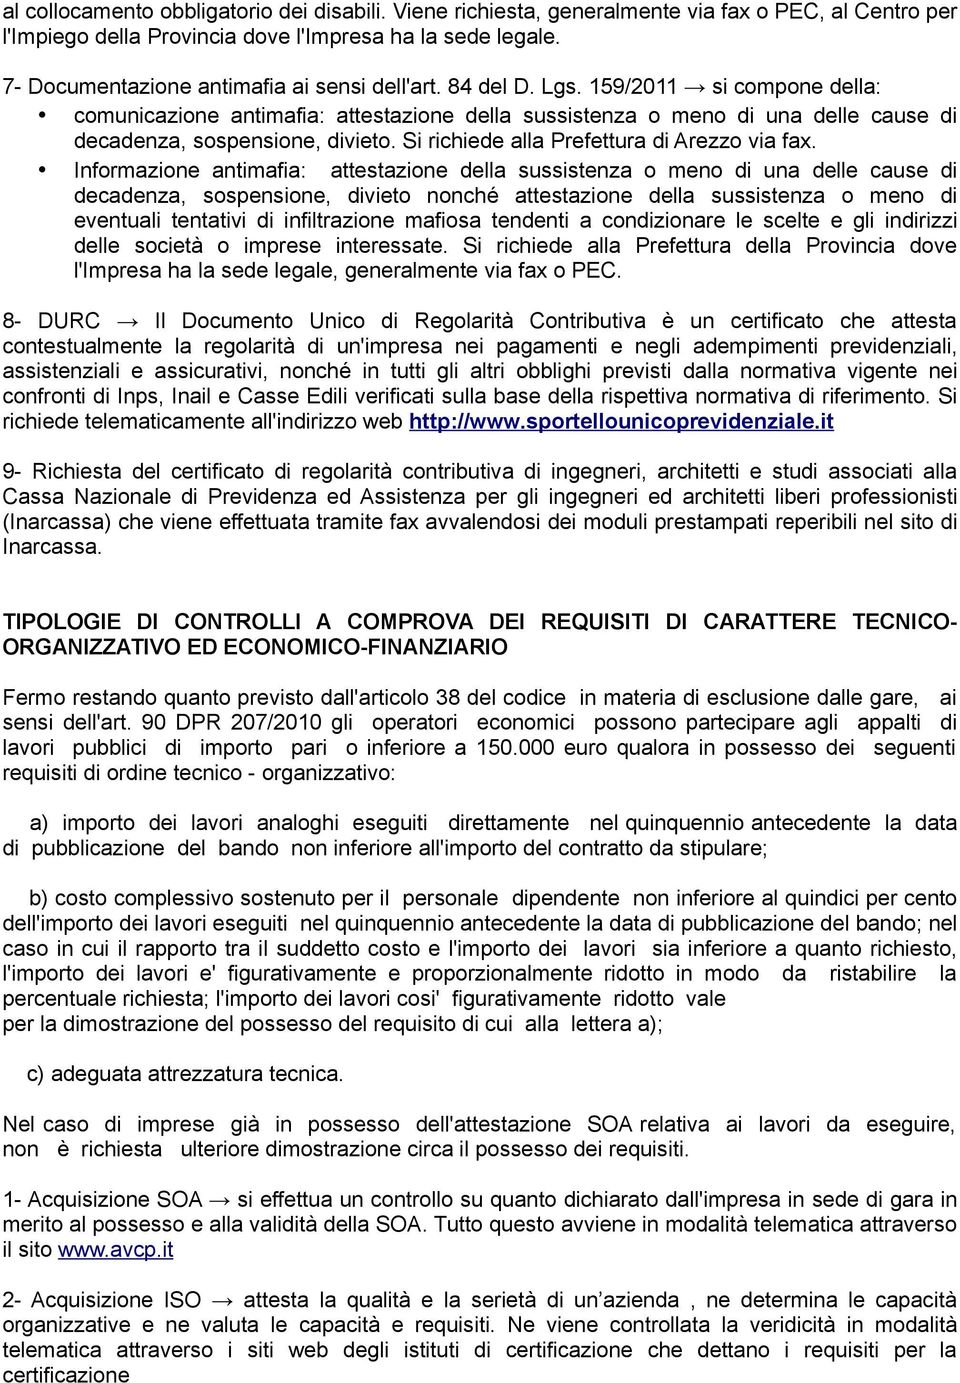 159/2011 si compone della: comunicazione antimafia: attestazione della sussistenza o meno di una delle cause di decadenza, sospensione, divieto. Si richiede alla Prefettura di Arezzo via fax.